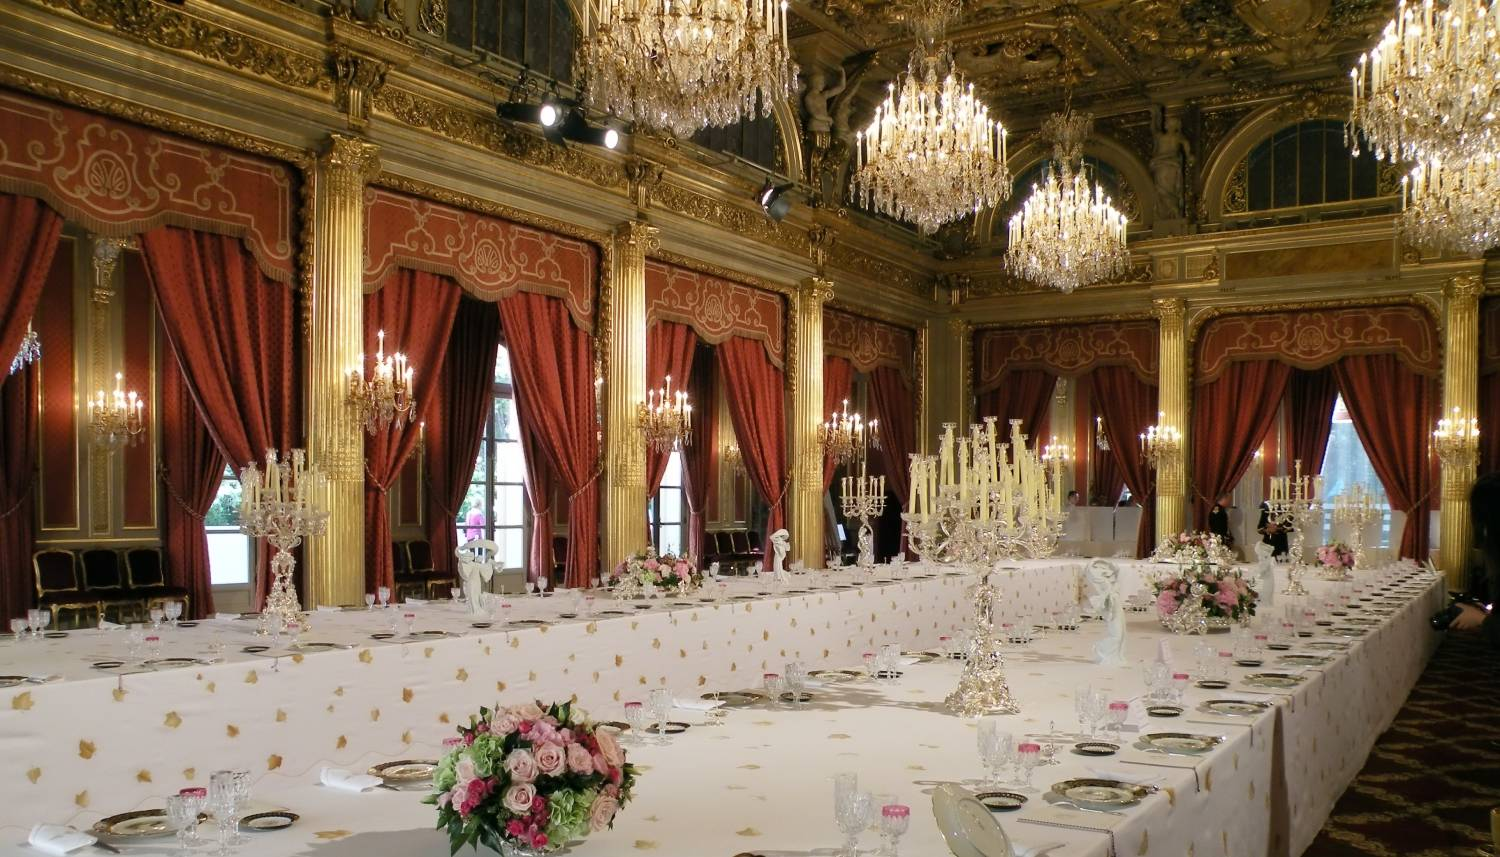 The Salle des Fêtes of the Elysée Palace